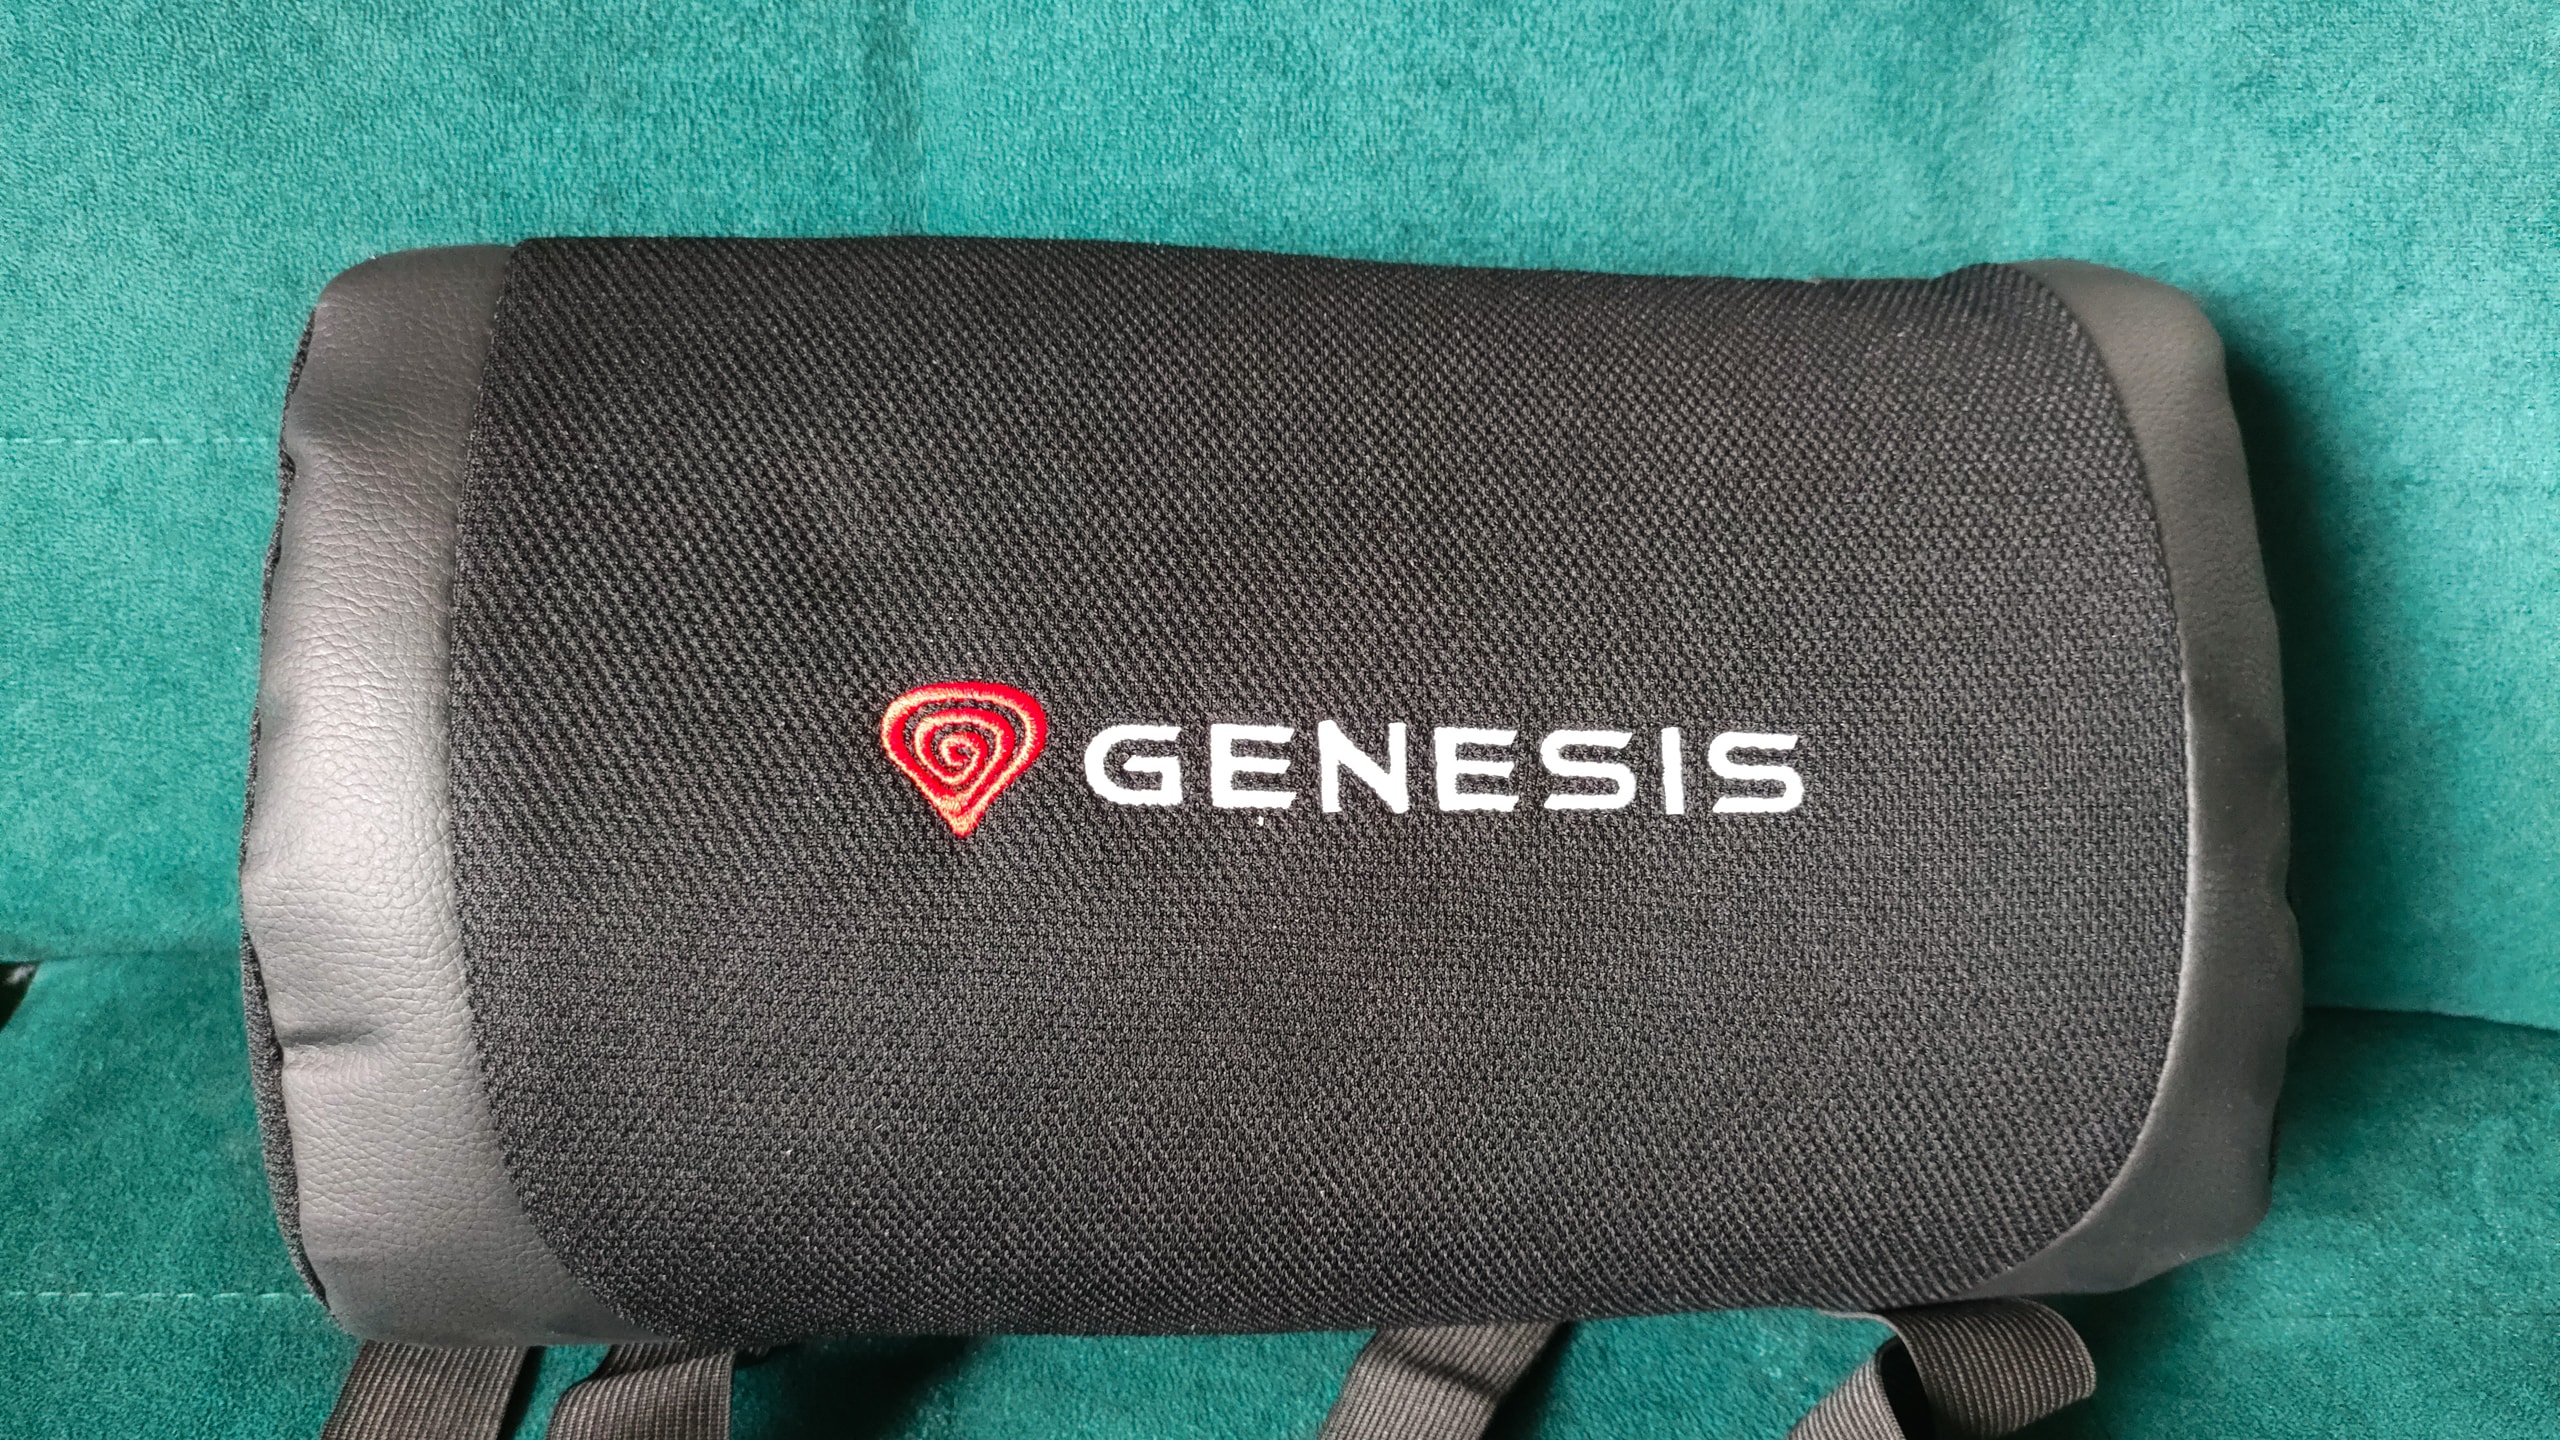 Genesis Nitro 550 G2